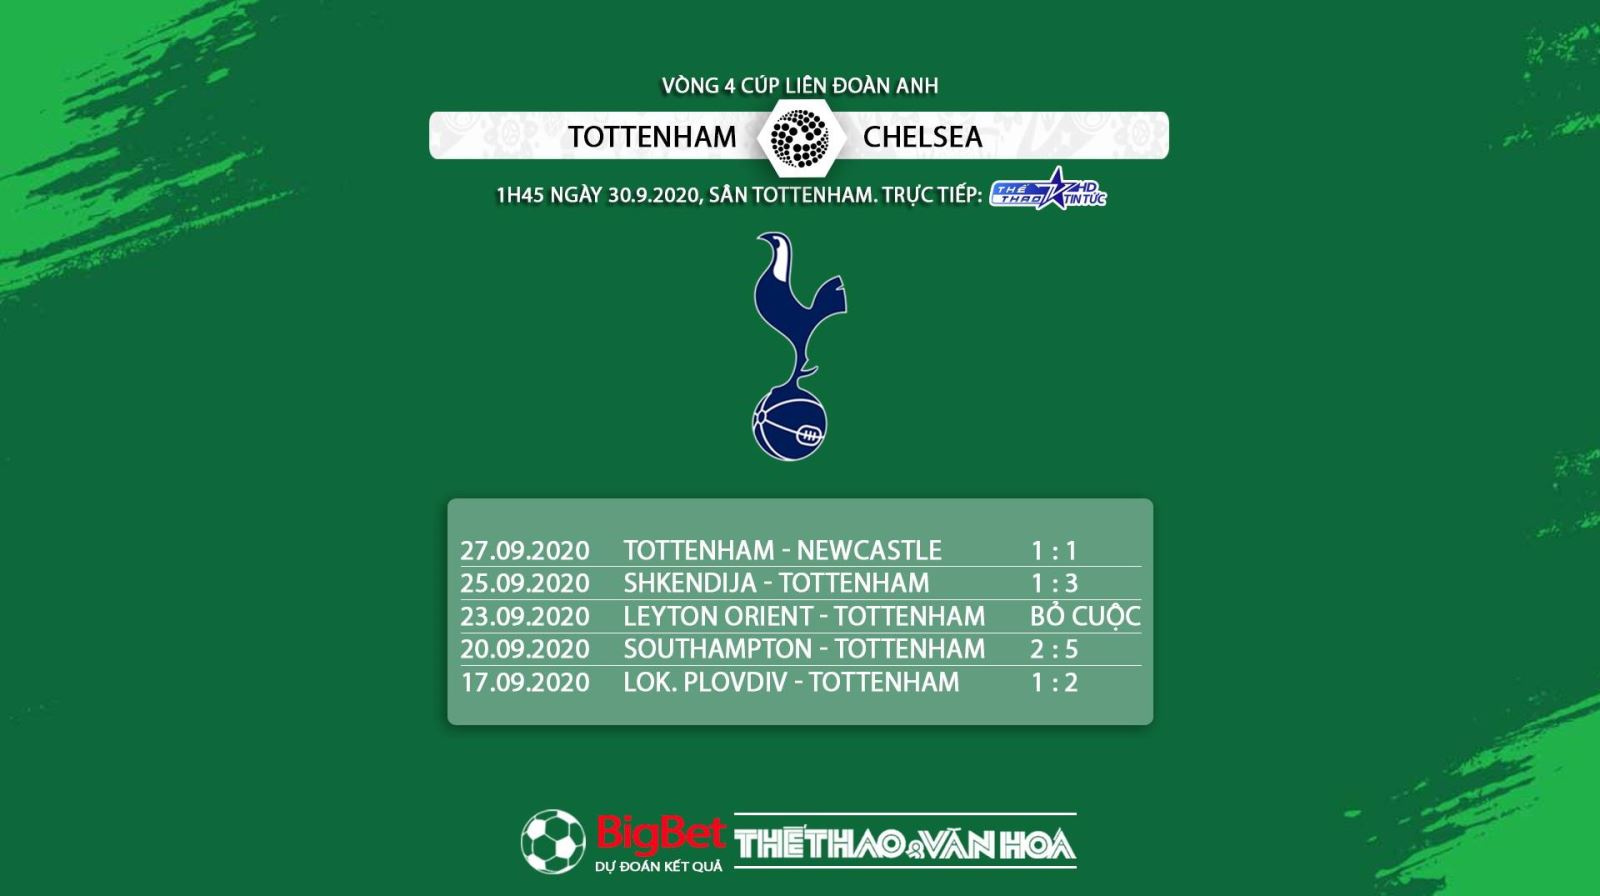 Keo nha cai, nhận định kết quả, Tottenham vs Chelsea, Vòng 4 Cúp Liên đoàn Anh, nhận định bóng đá Chelsea đấu với Tottenham, kèo Chelsea, kèo Tottenham, trực tiếp Tottenham vs Chelsea